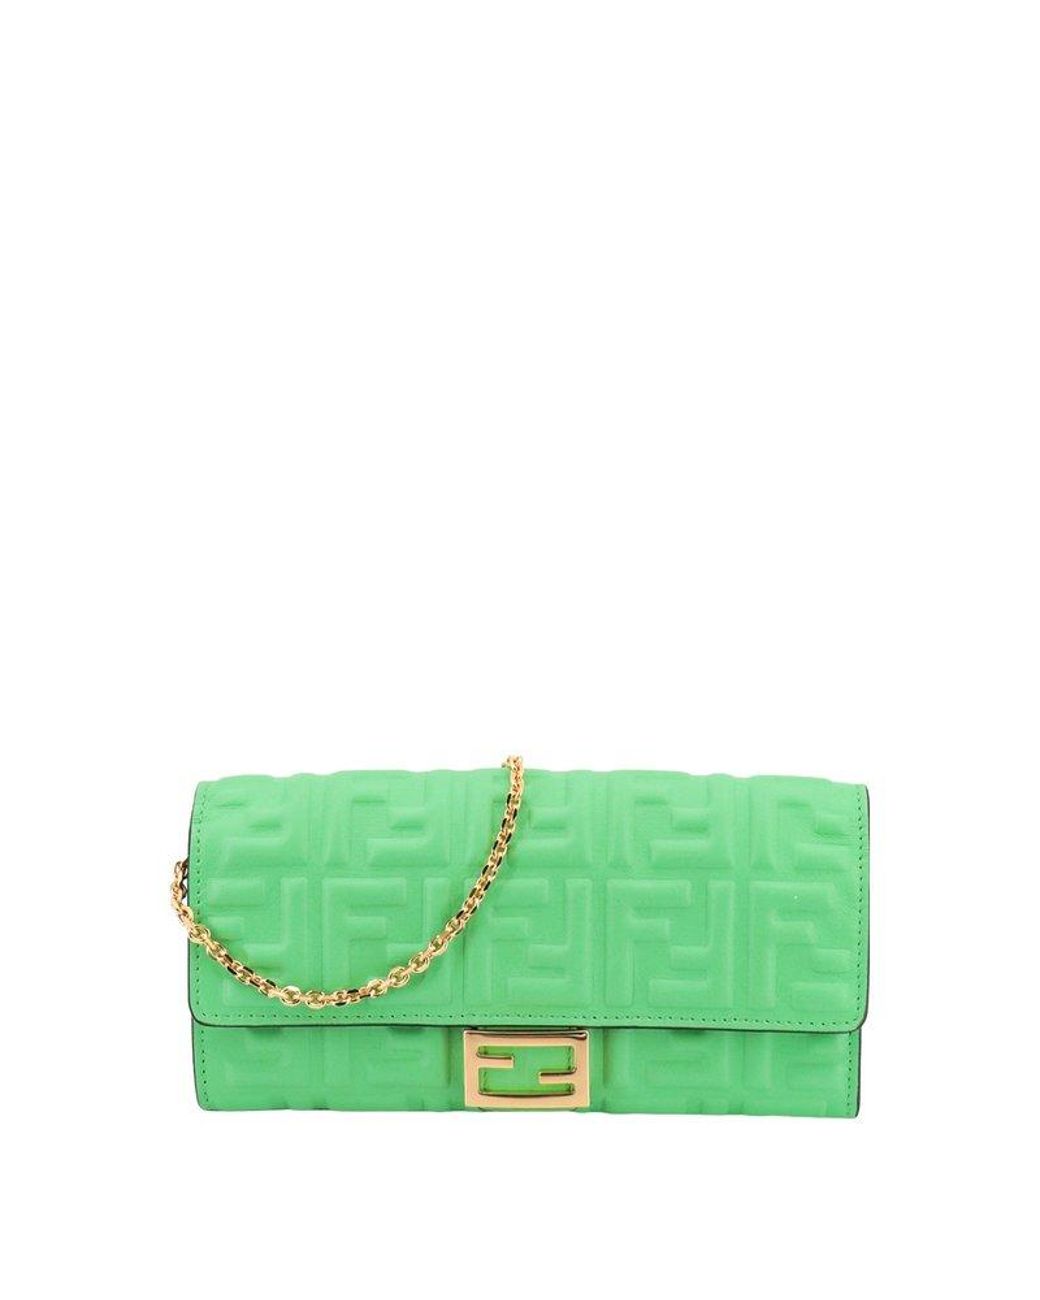 Fendi Baguette Leather Wallet On Chain in Green